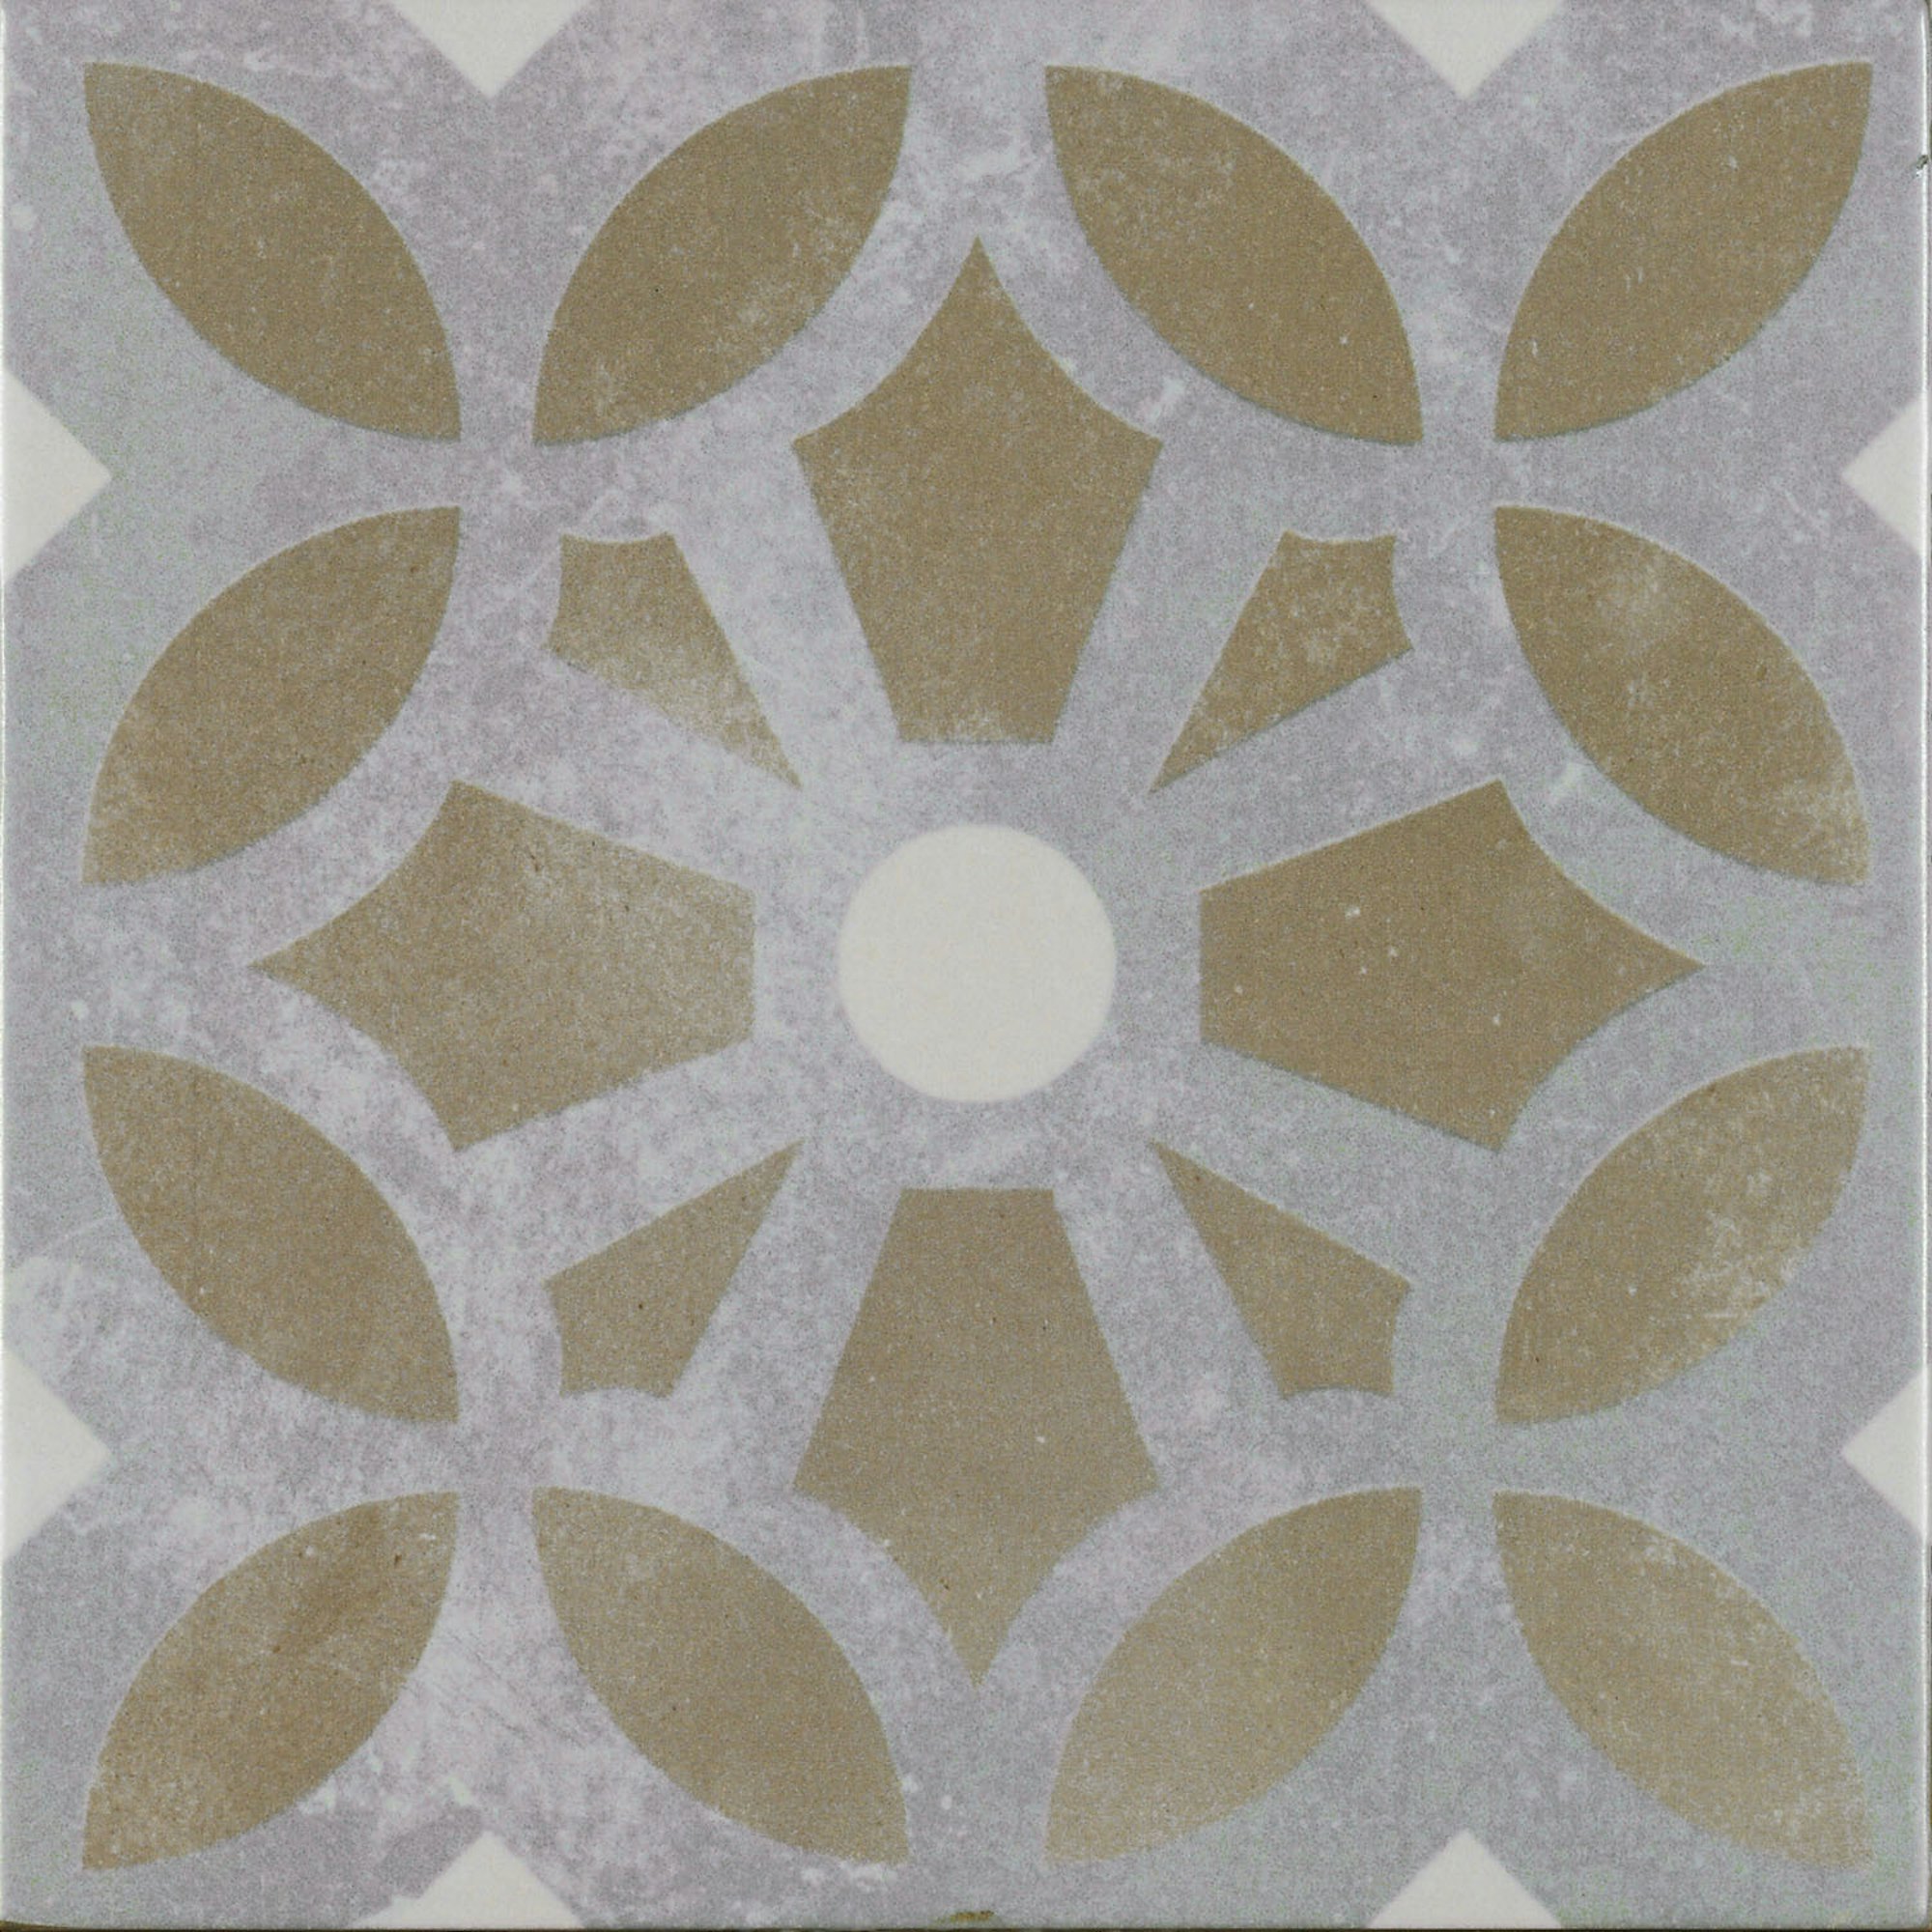 Bordeaux Morlaix Patterned Tile